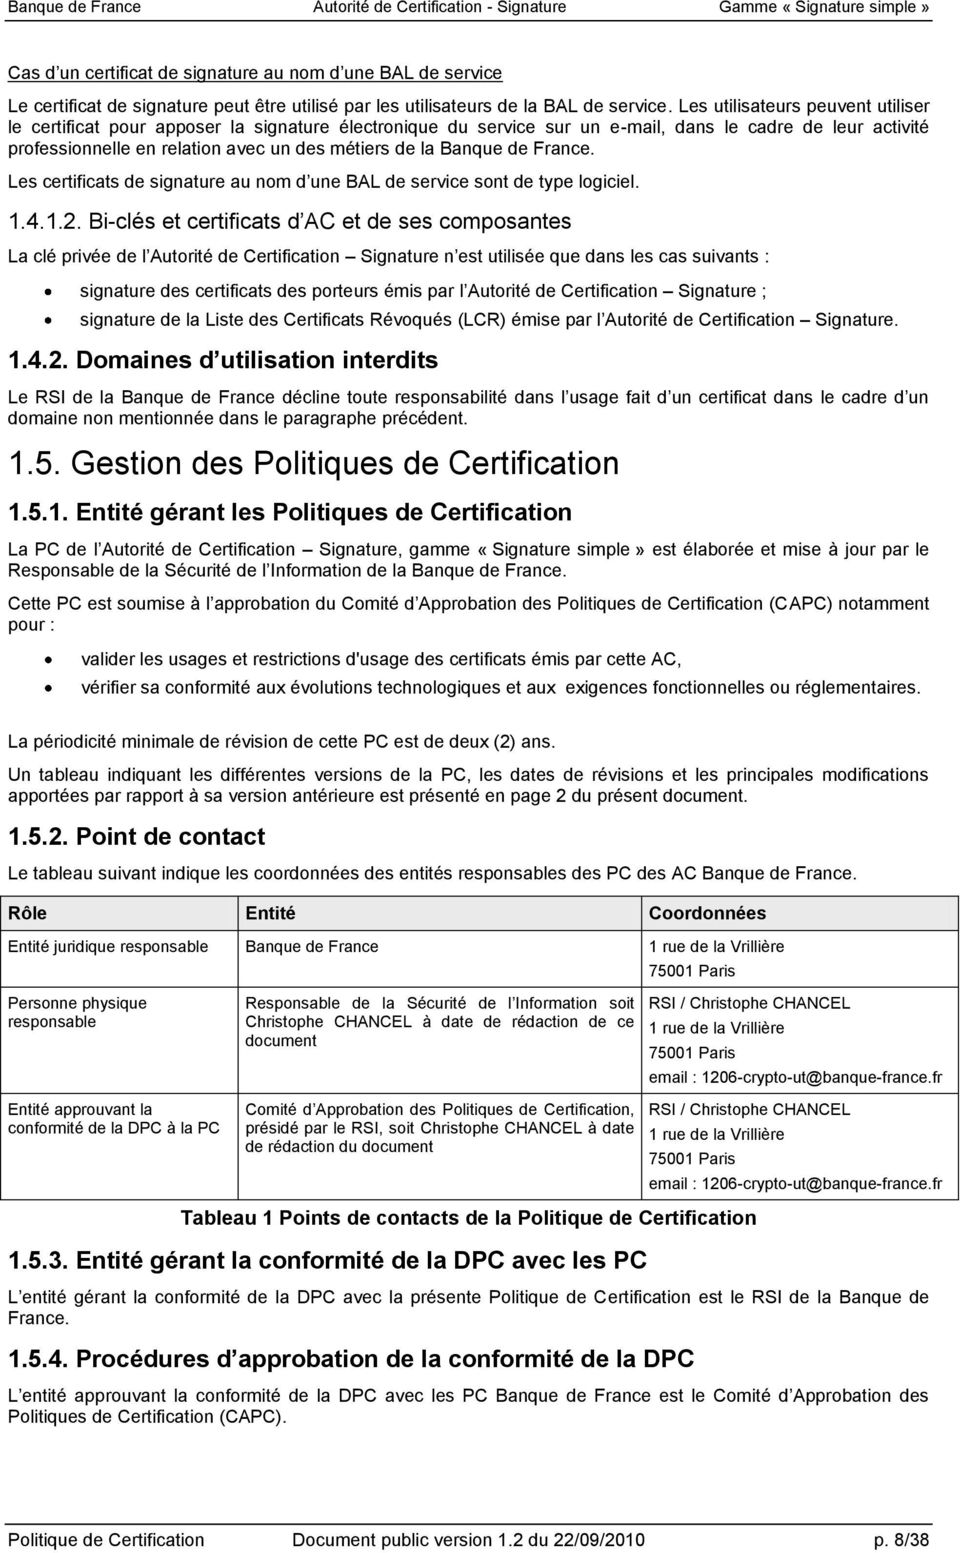 Banque de France. Les certificats de signature au nom d une BAL de service sont de type logiciel. 1.4.1.2.